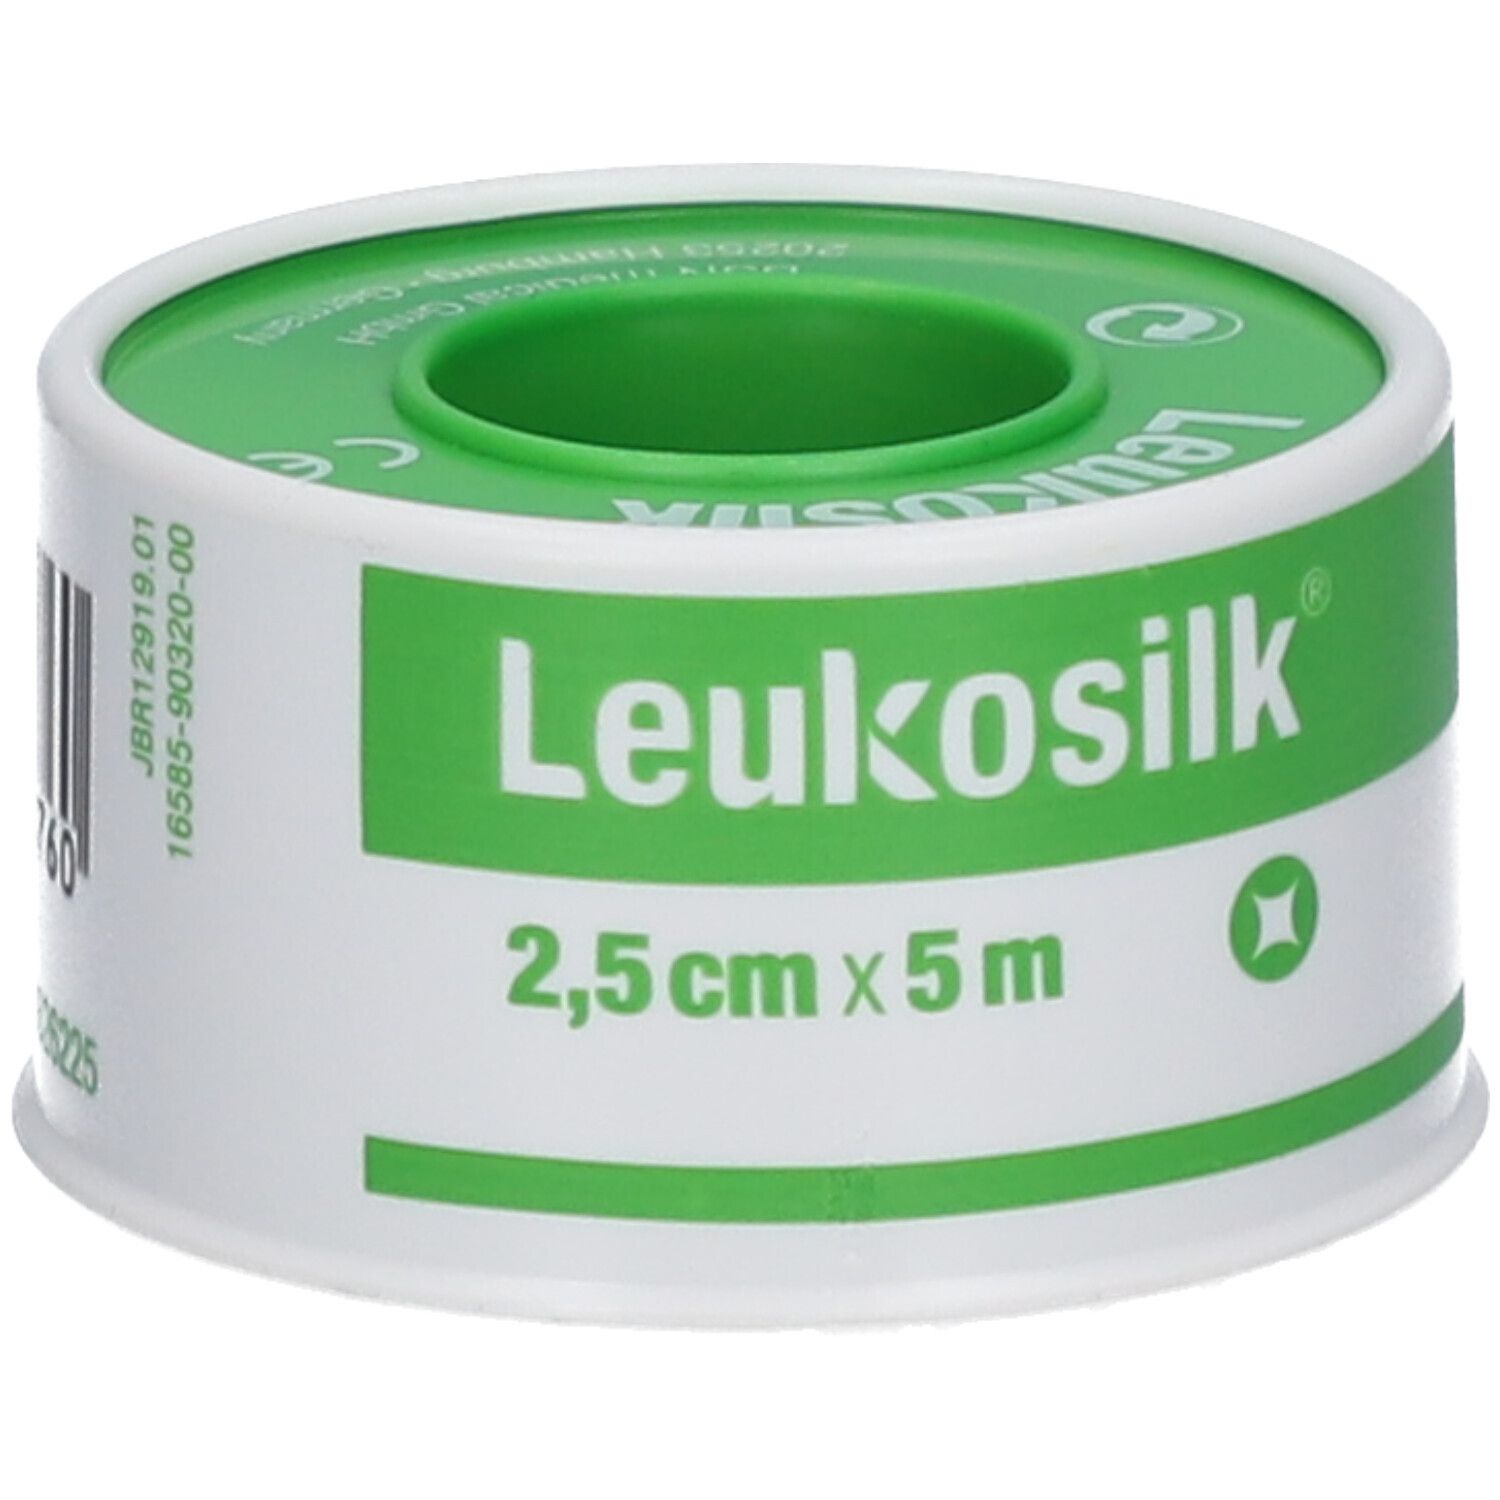 Leukosilk Sticking Plaster 2,5cm x 5m